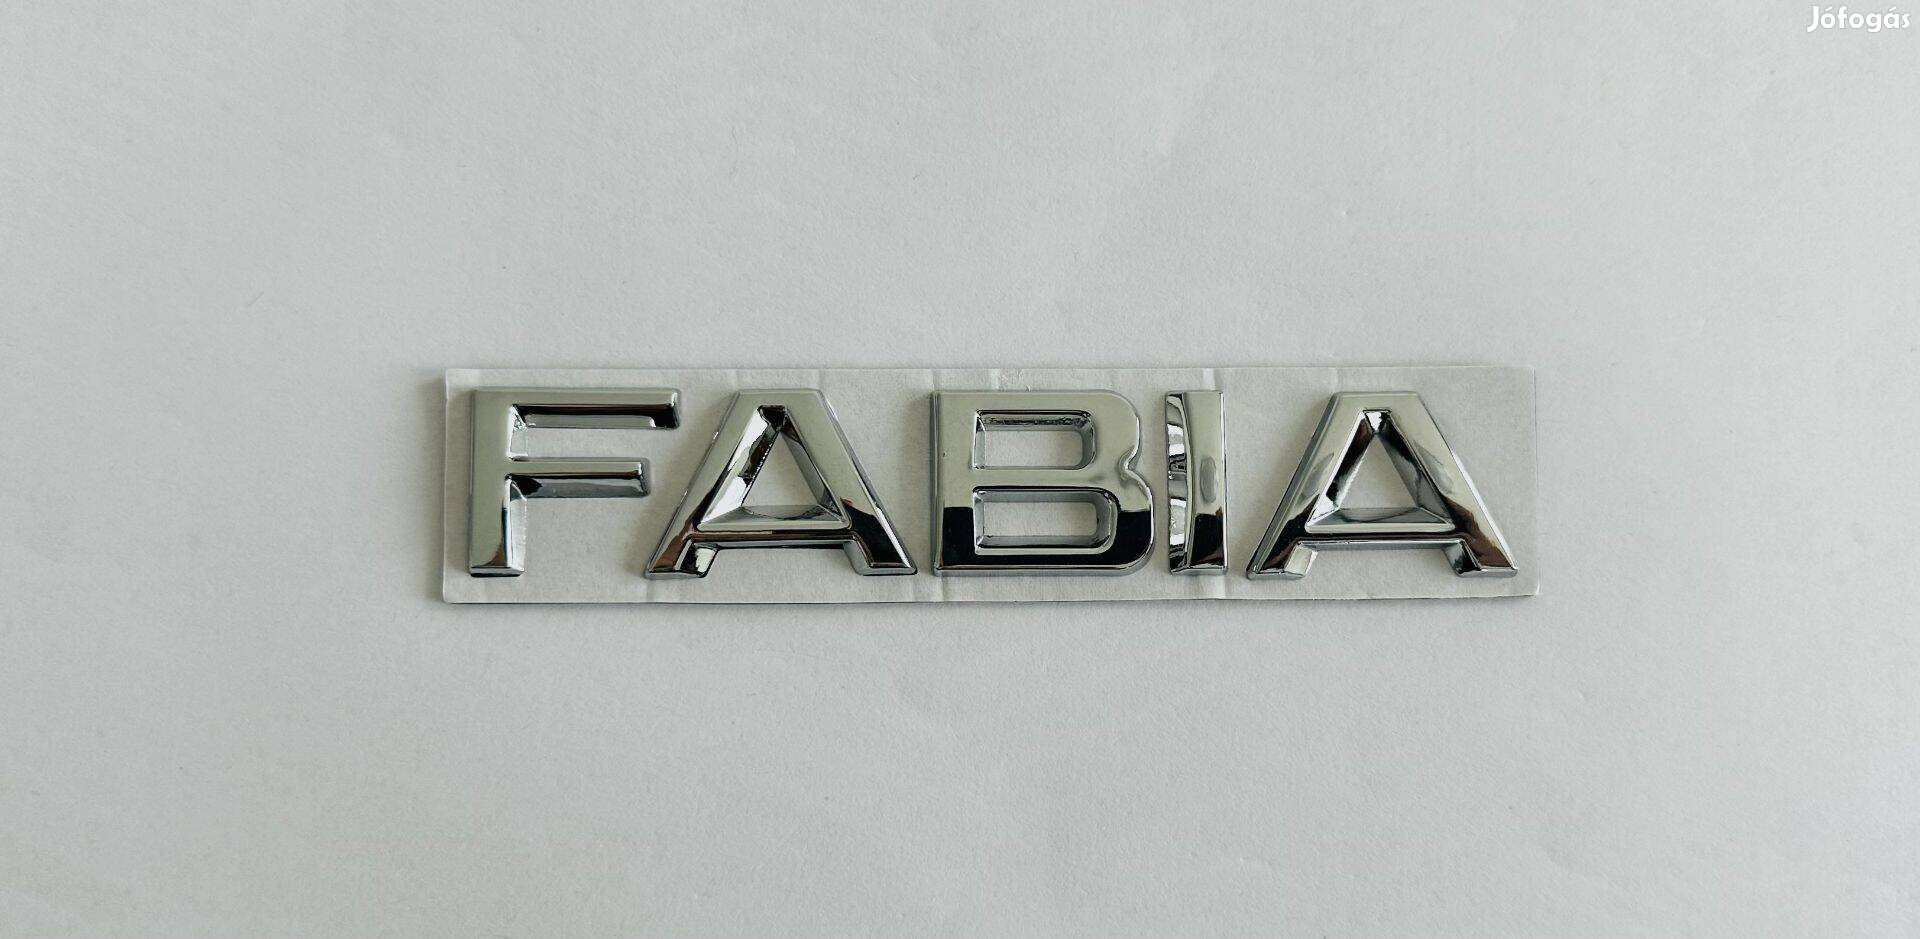 Új Skoda Fabia felirat embléma jel logó kiegészítő gépház csomagtér